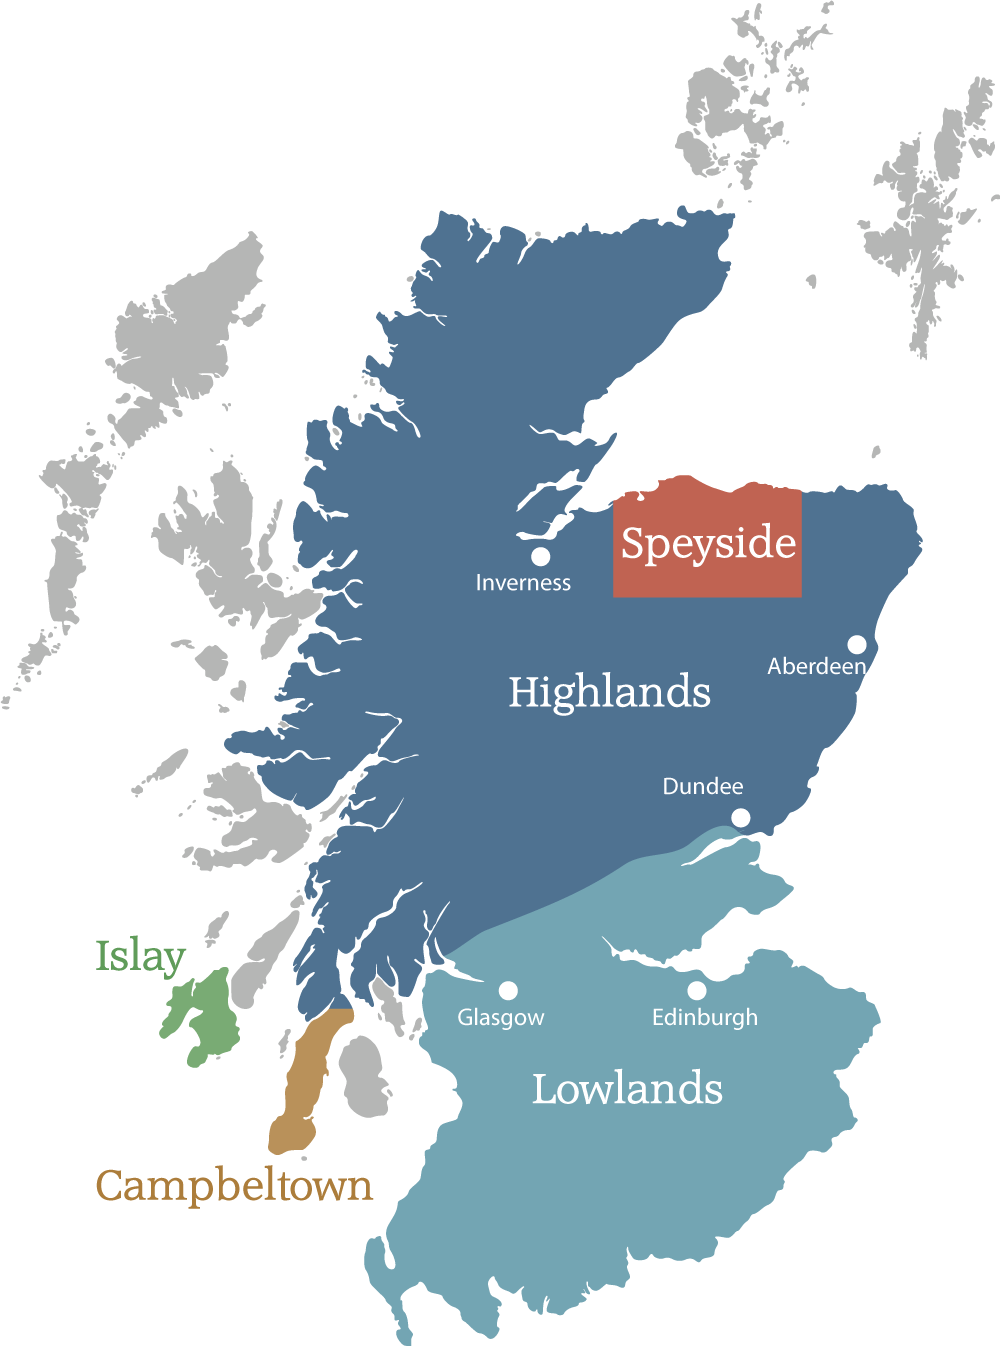 Karte von Schottland mit eingezeichneten Whisky Regionen